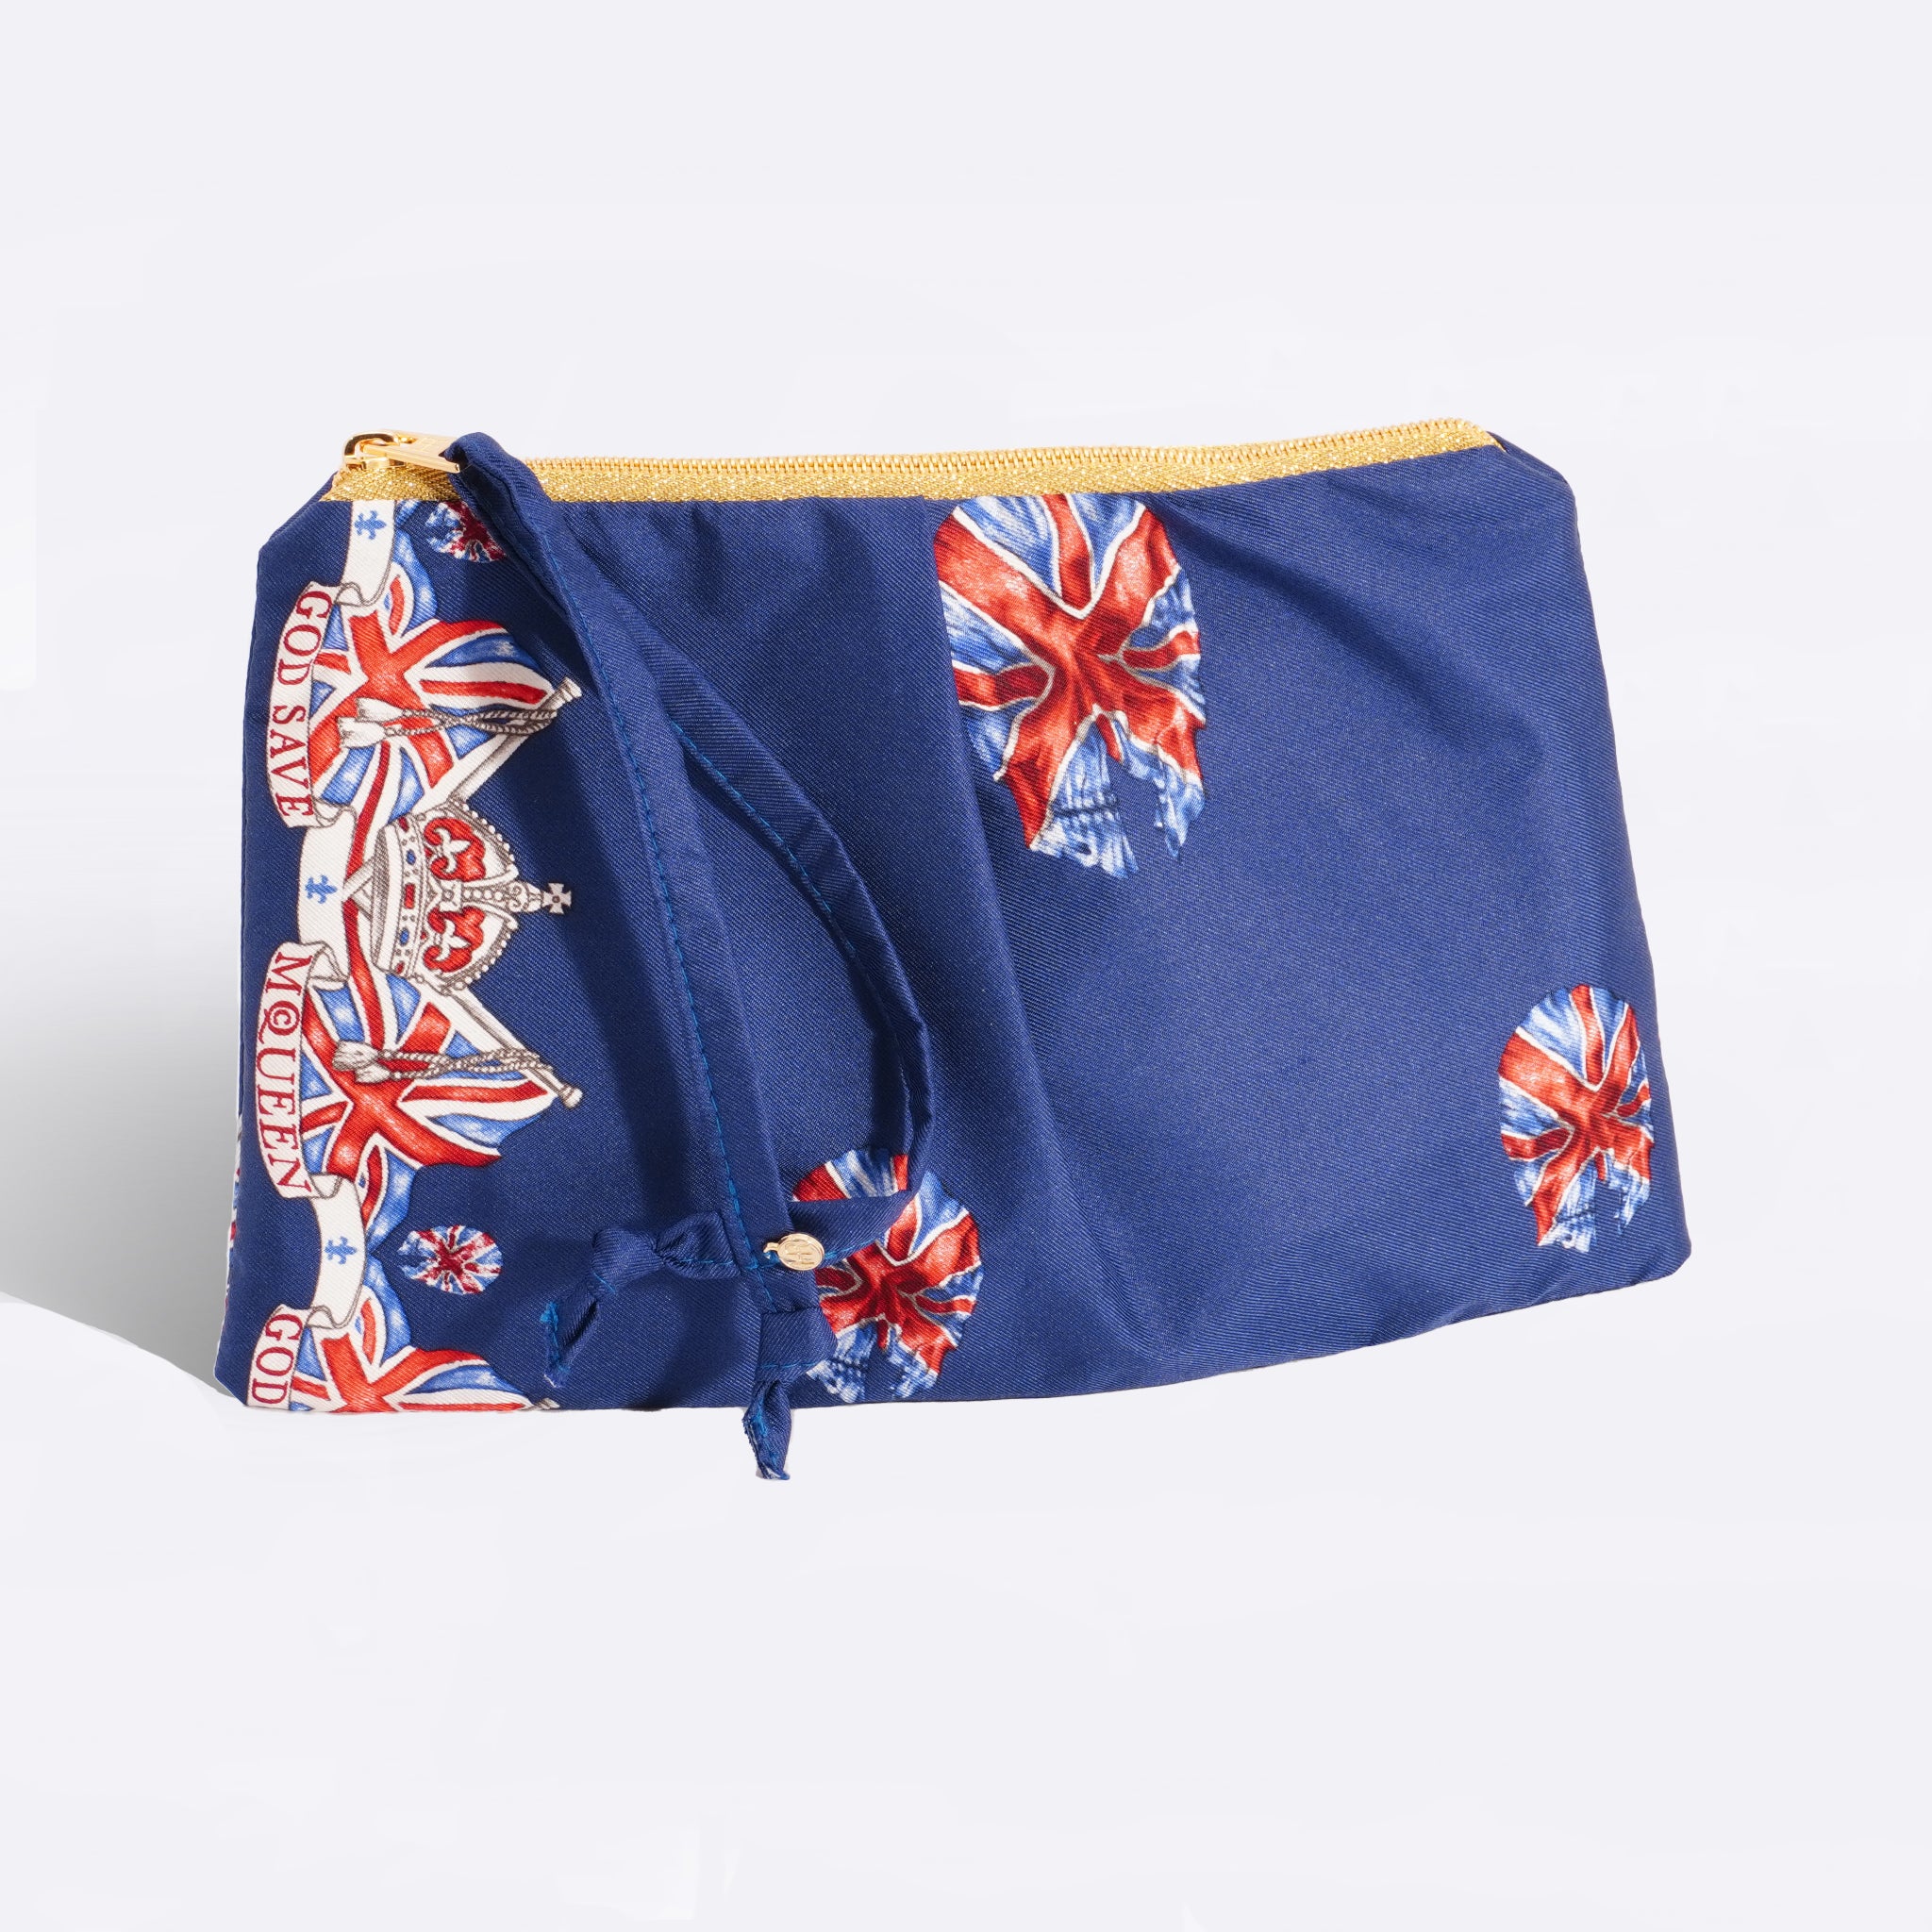 designer bag with scarf]